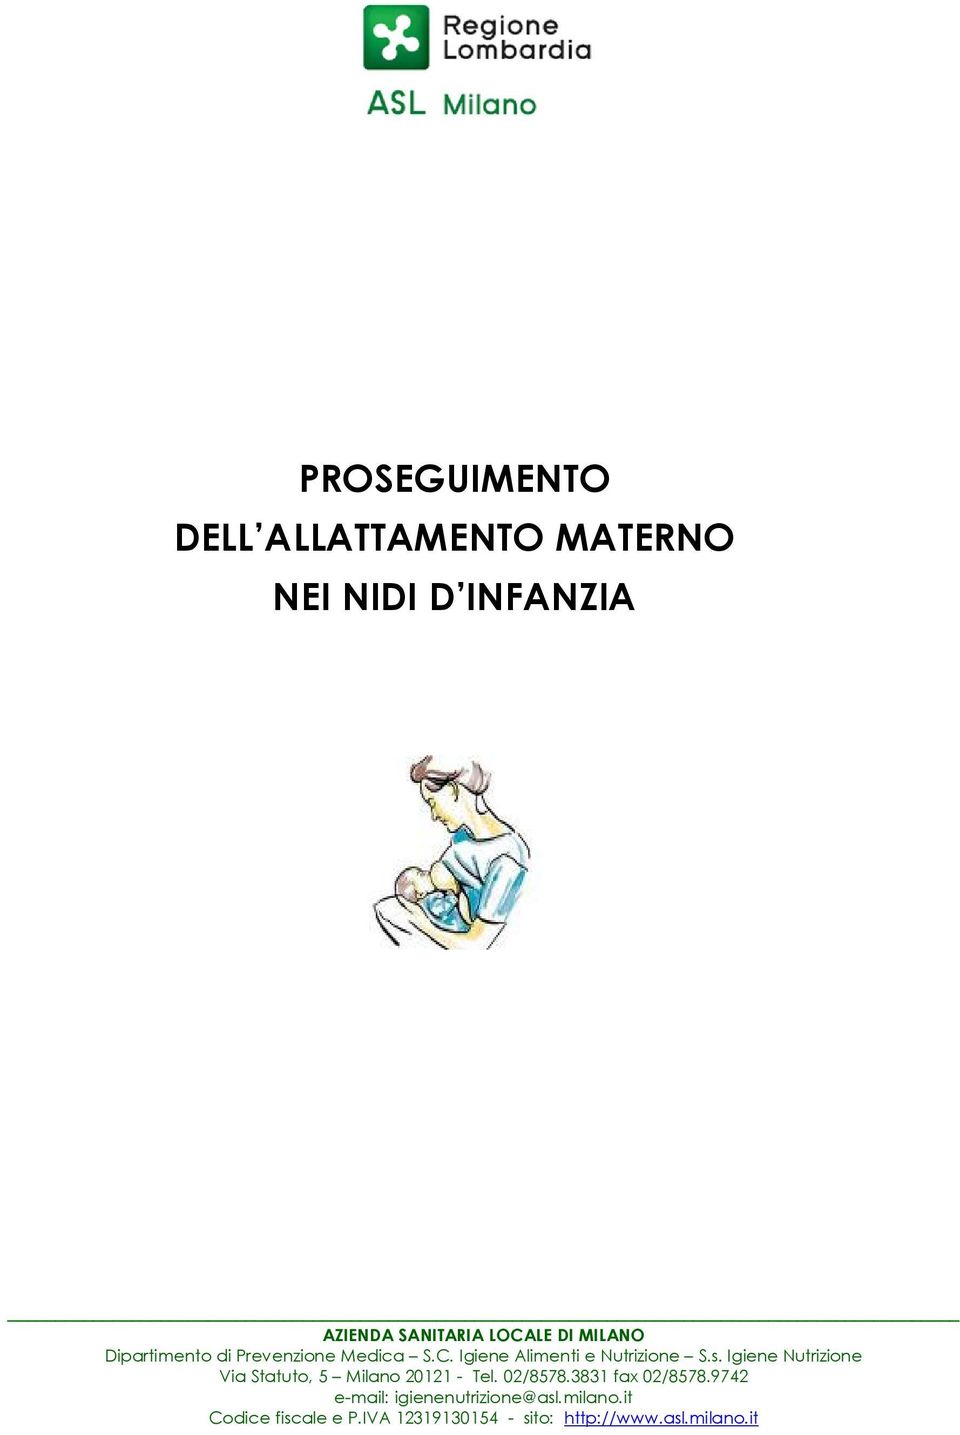 Igiene Nutrizione Via Statuto, 5 Milano 20121 - Tel. 02/8578.3831 fax 02/8578.